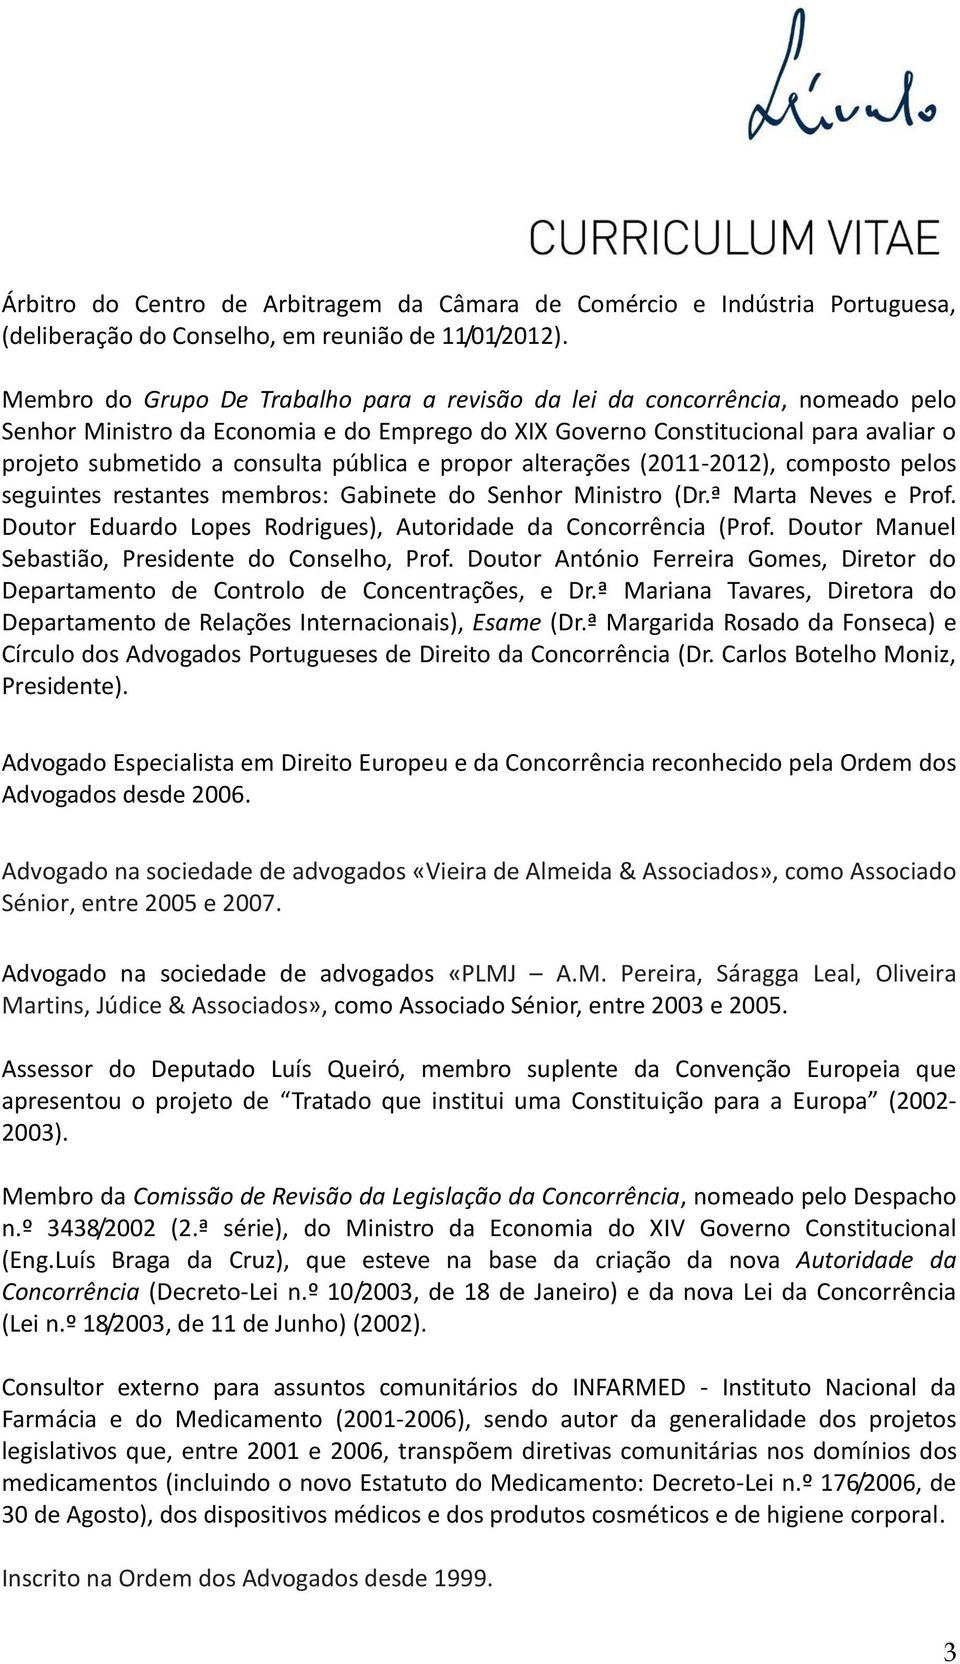 pública e propor alterações (2011-2012), composto pelos seguintes restantes membros: Gabinete do Senhor Ministro (Dr.ª Marta Neves e Prof.